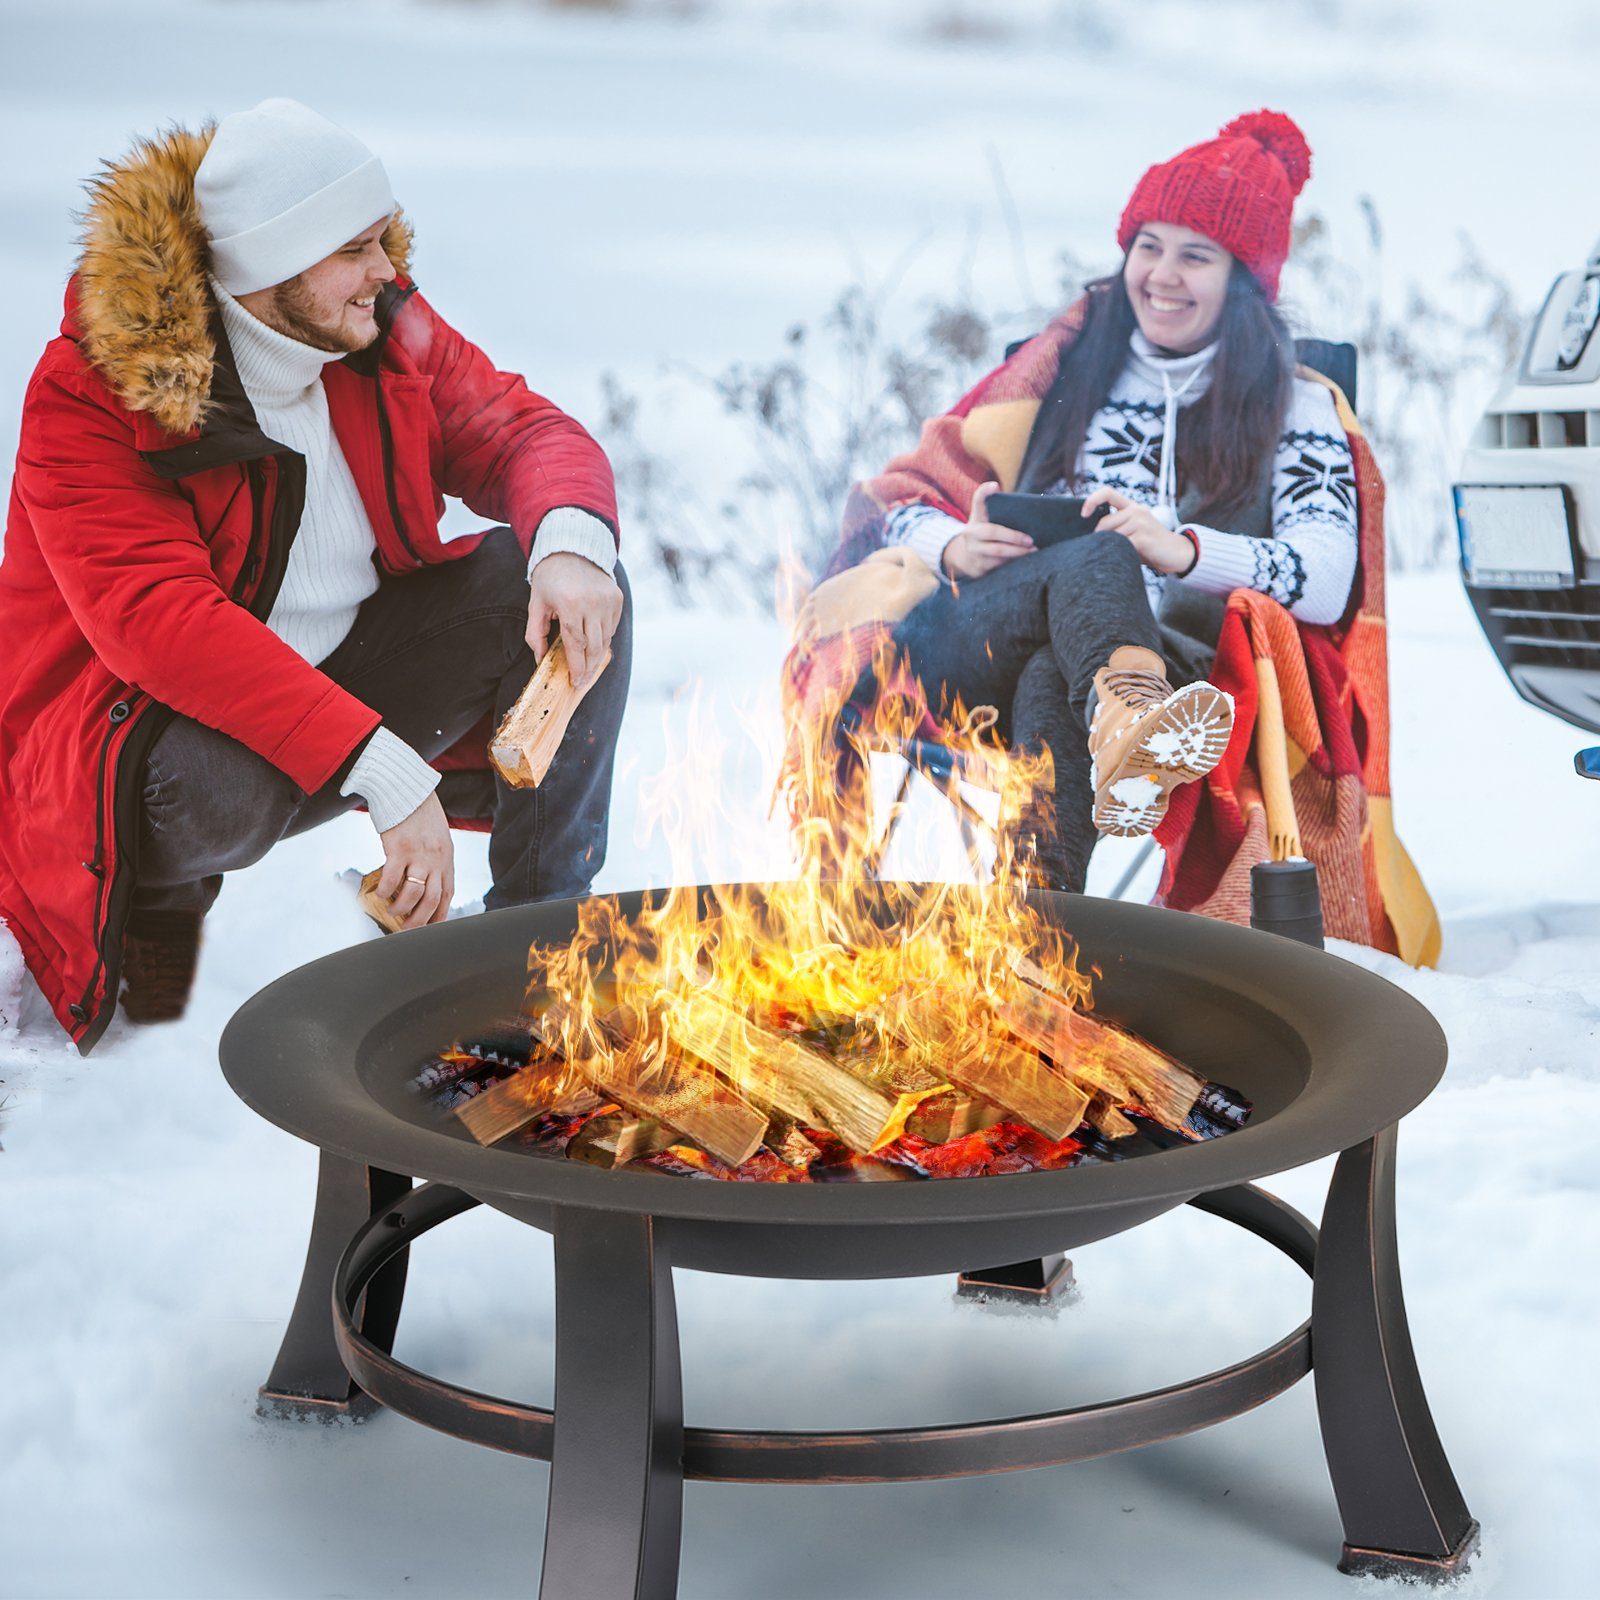 TLGREEN Feuerschale, Φ76cm Feuerkorb mit grillrost, Feuerschalen für den garten, BBQ grill